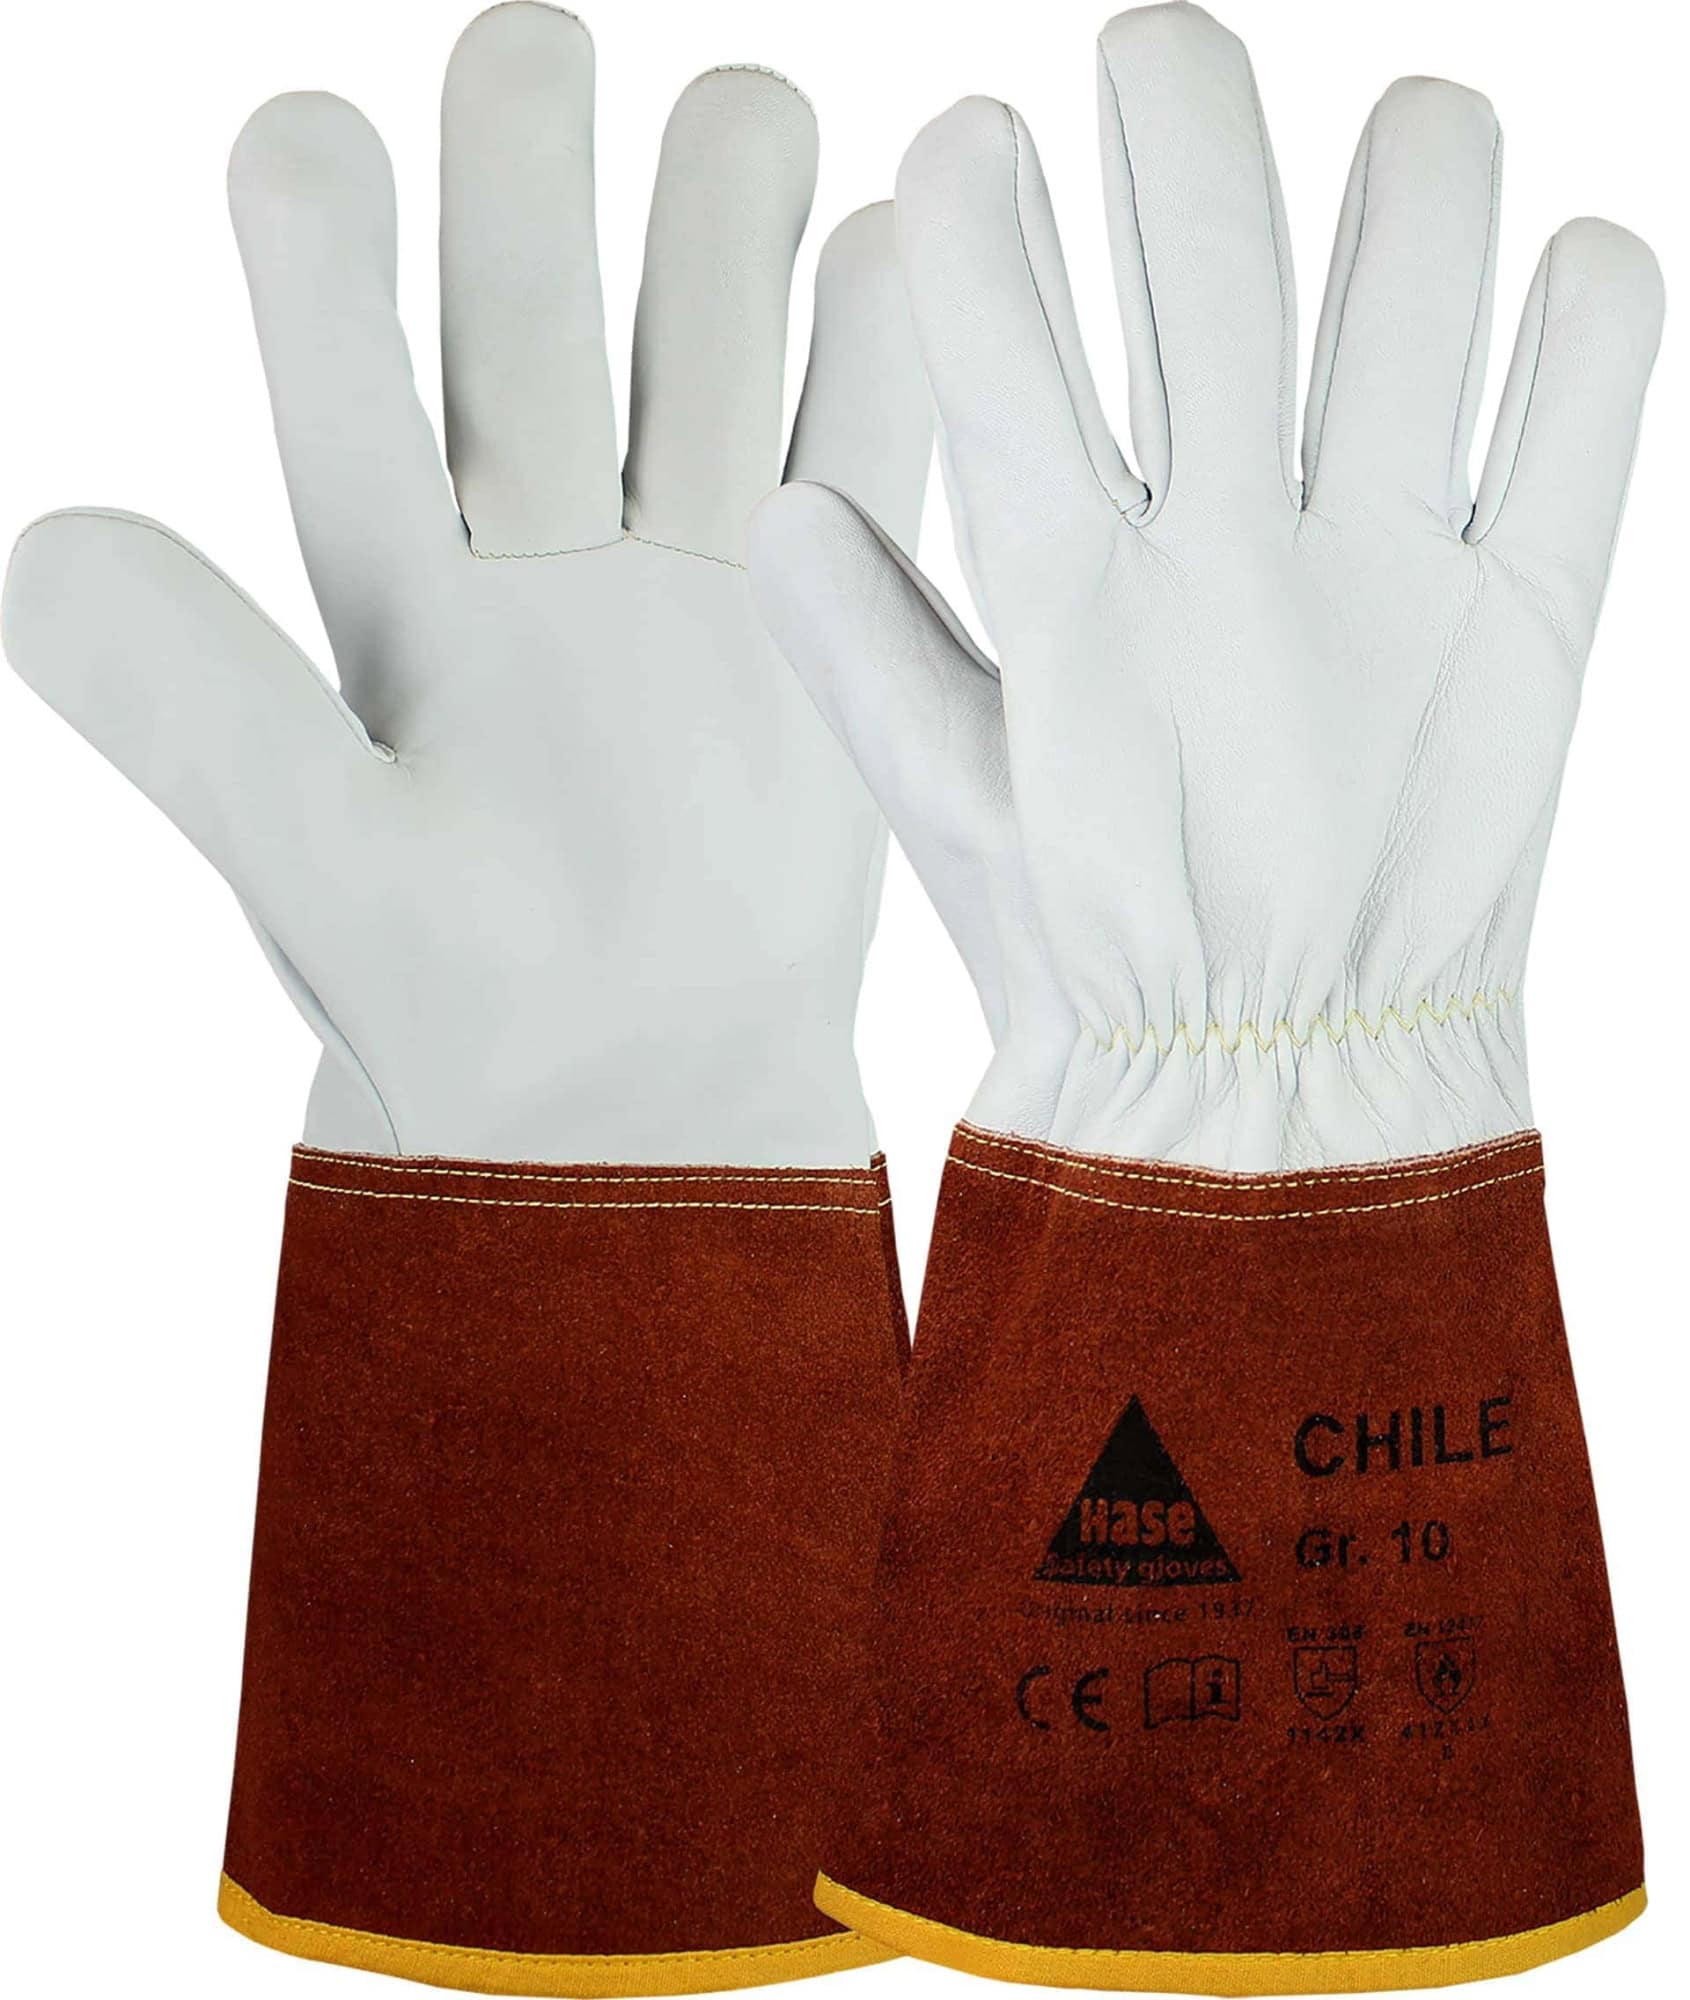 Hase Safety Gloves® CHILE 403840-10, Größe 10, Typ B, Kat. II, Natur/Dunkelbraun, Schweißerhandschuh für leichte Schweißarbeiten